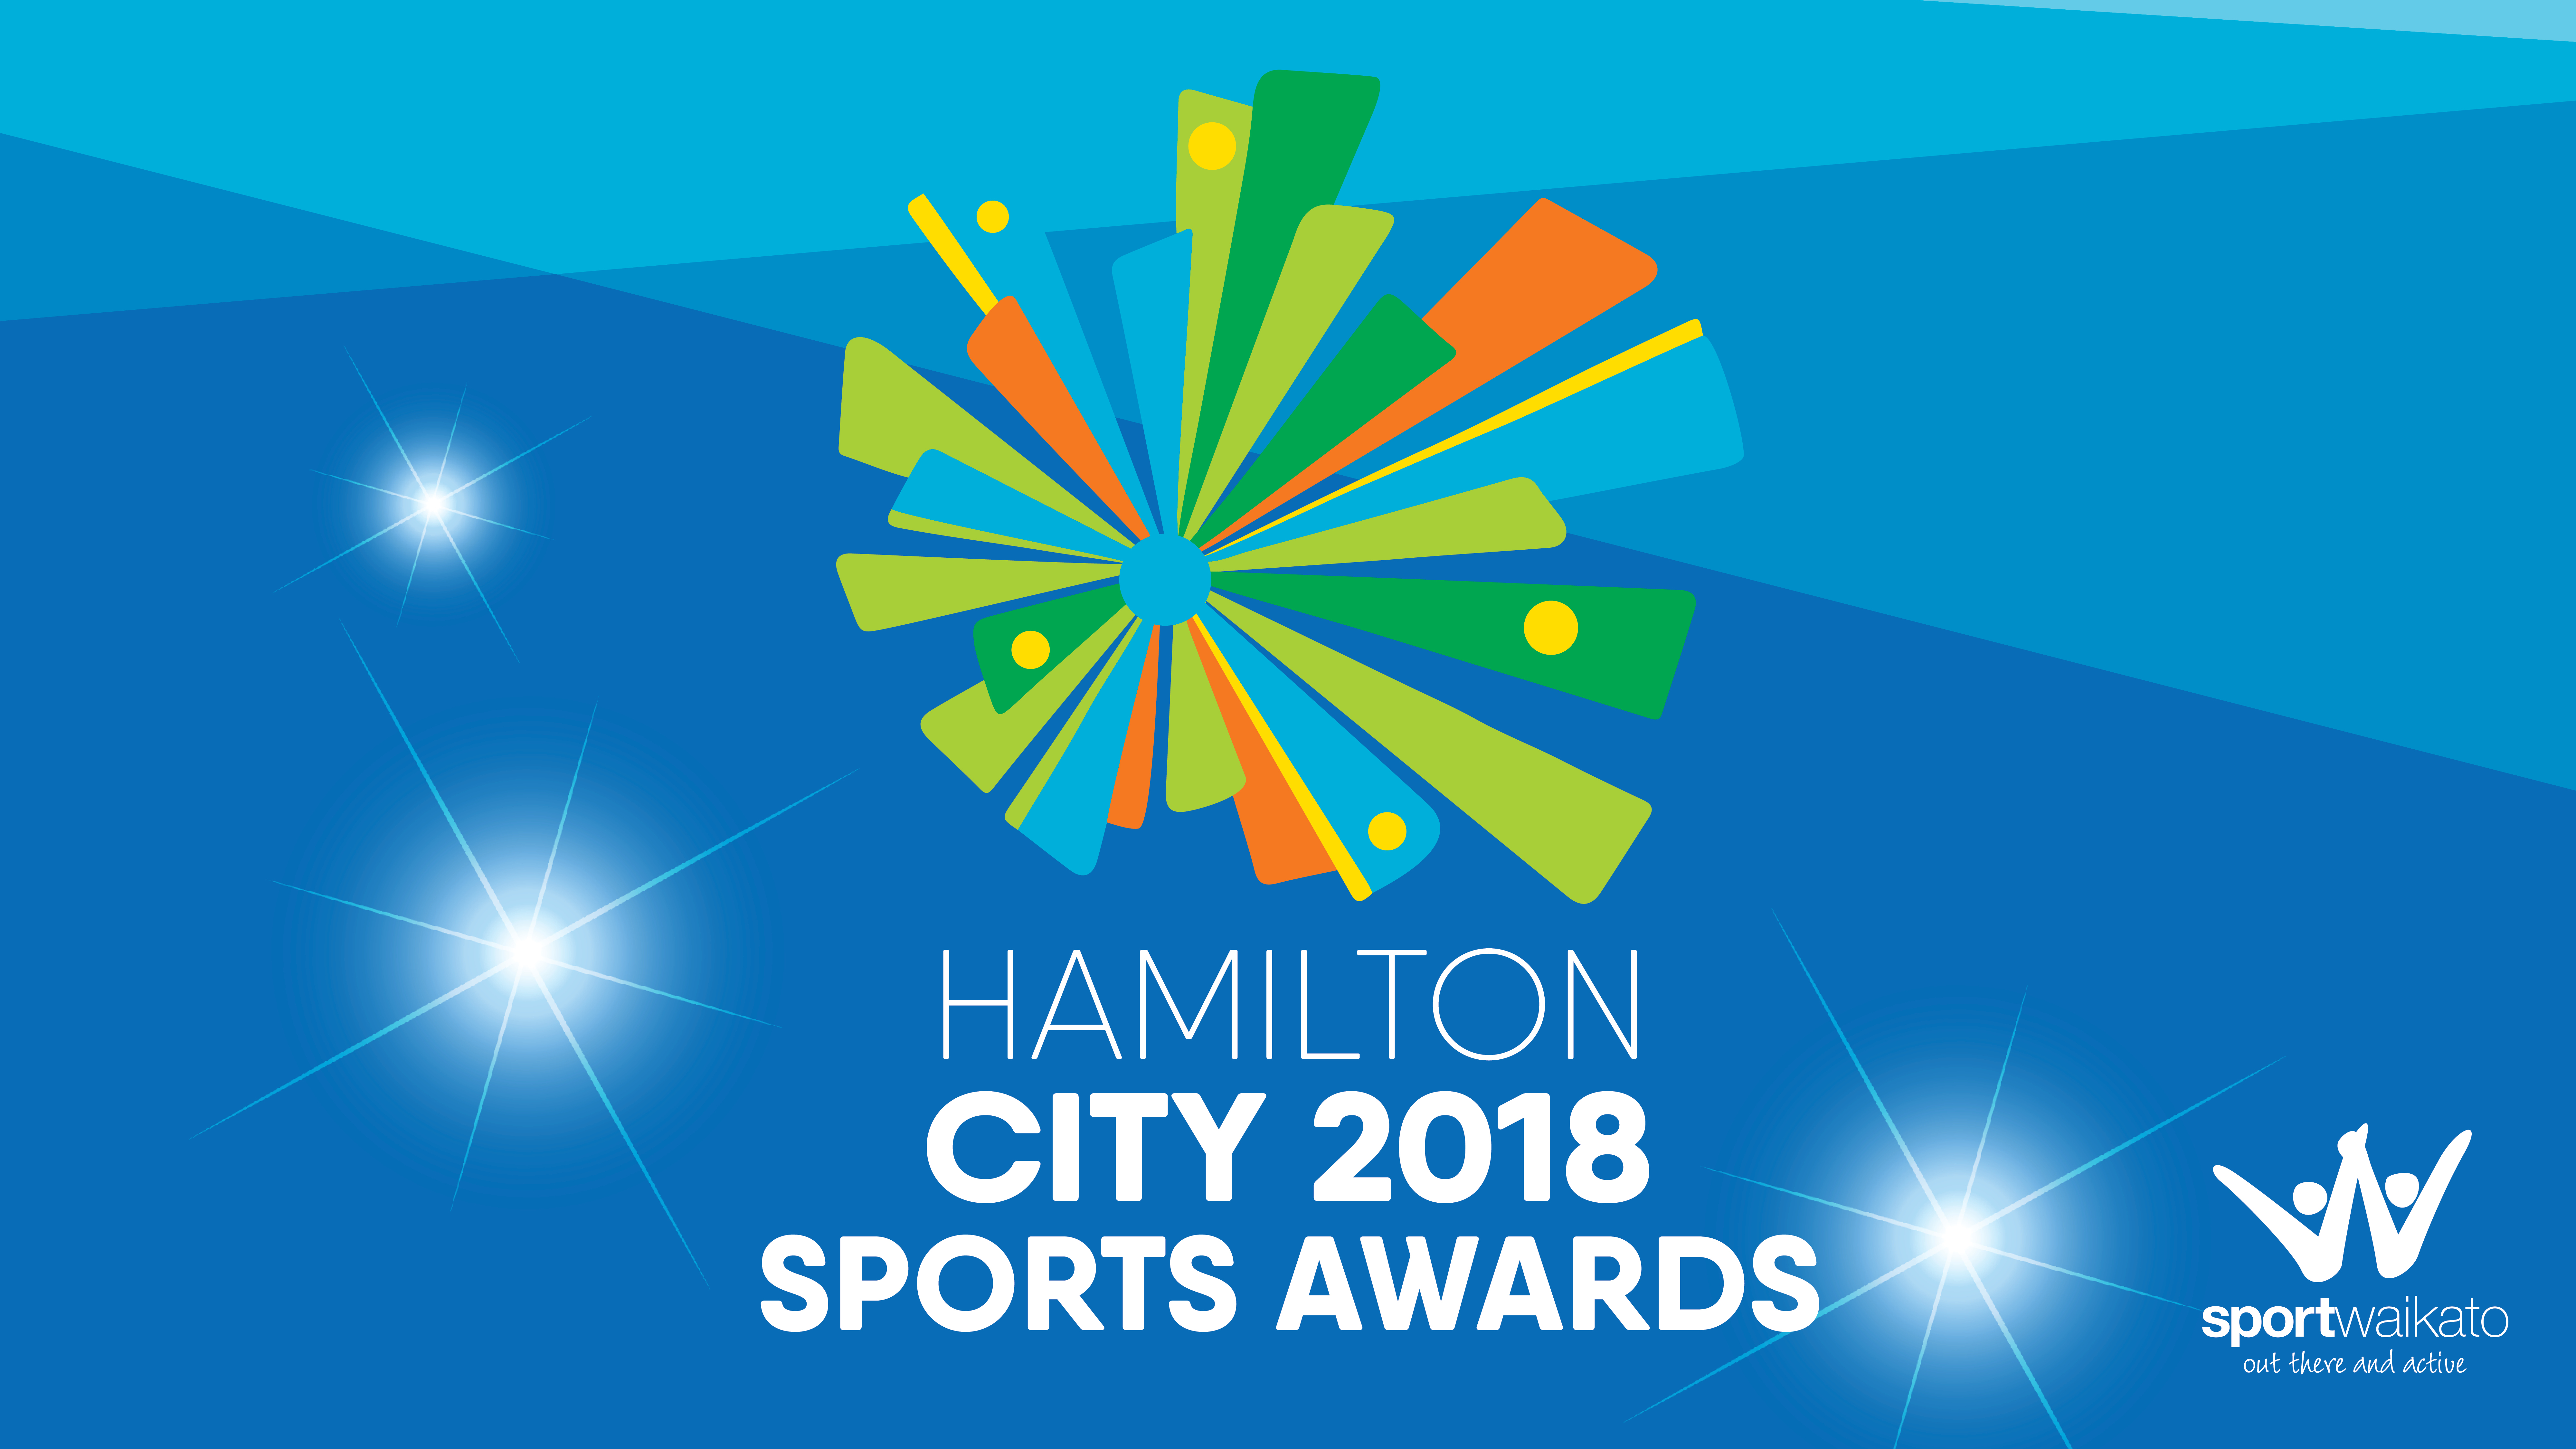 2018 Hamilton City Sports Awards nominees announced!